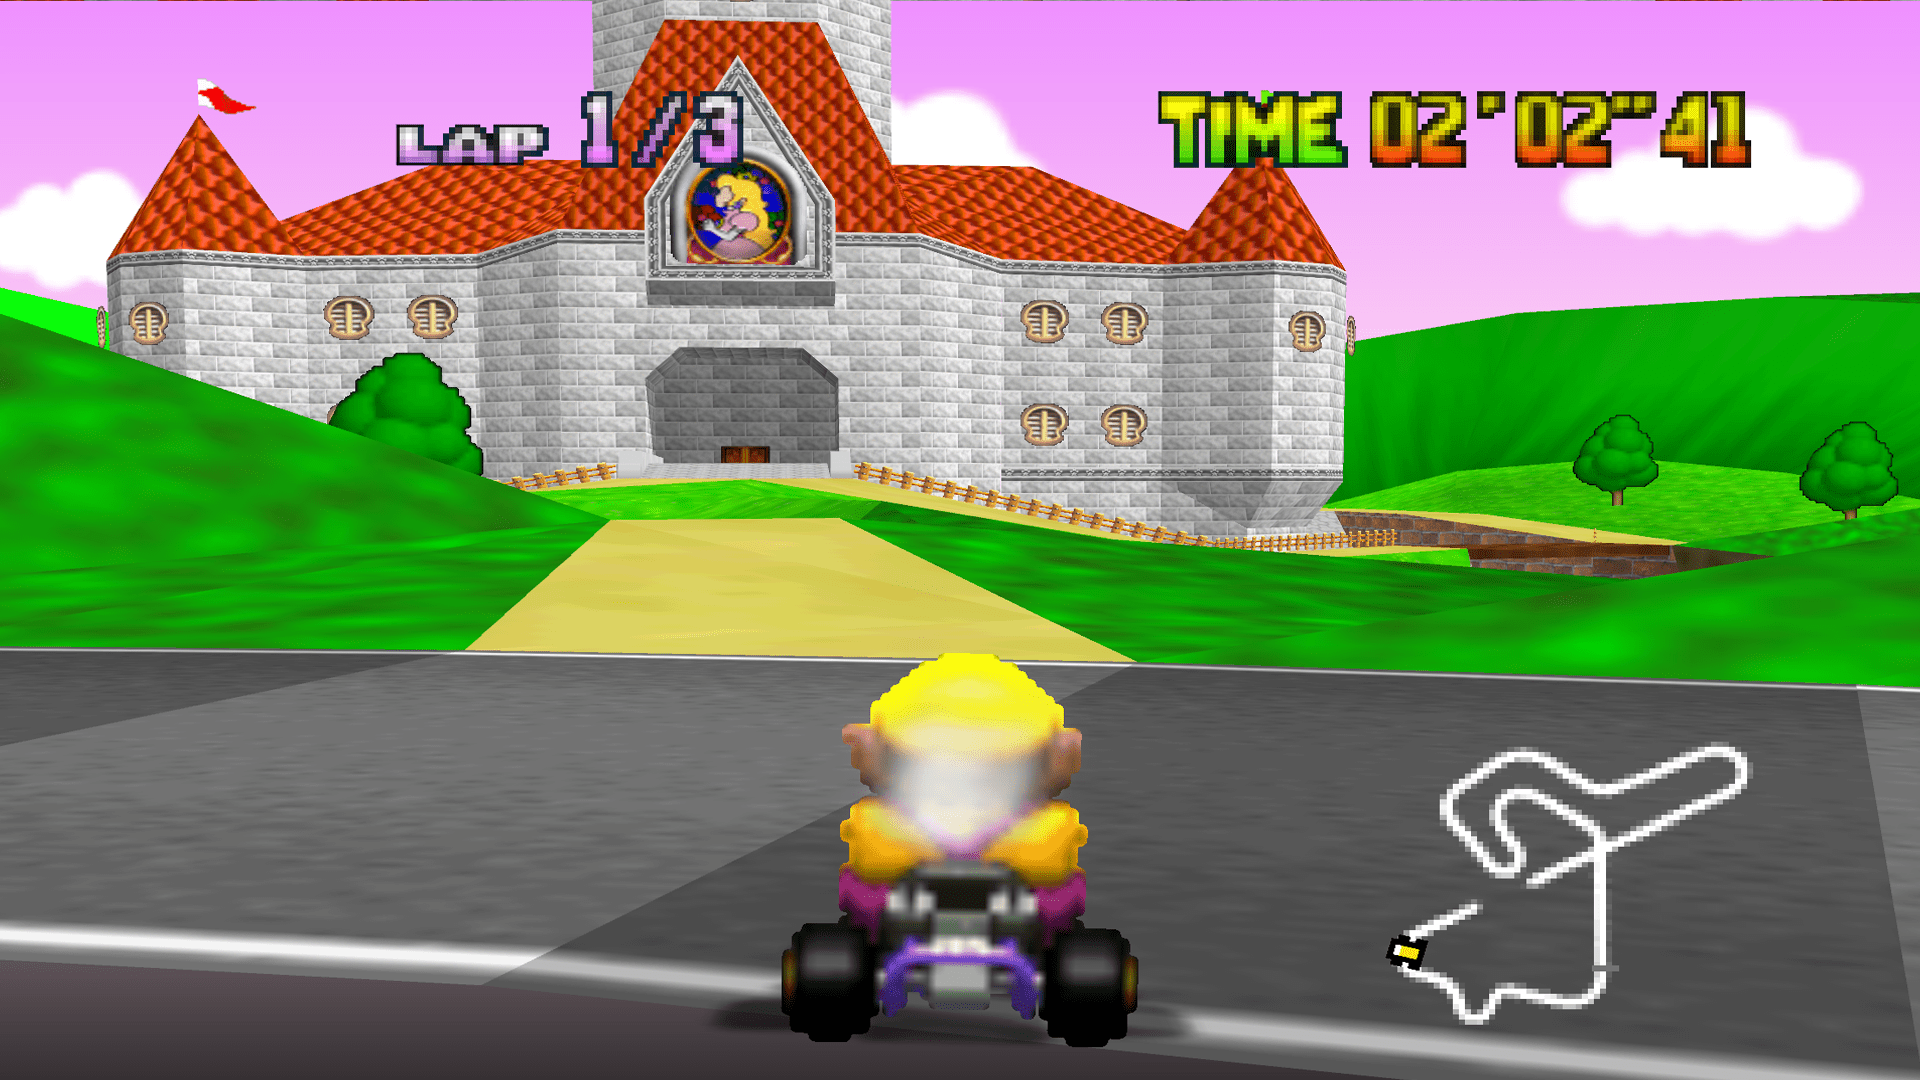 Play Mario Kart 64 Online – Nintendo 64(N64) –